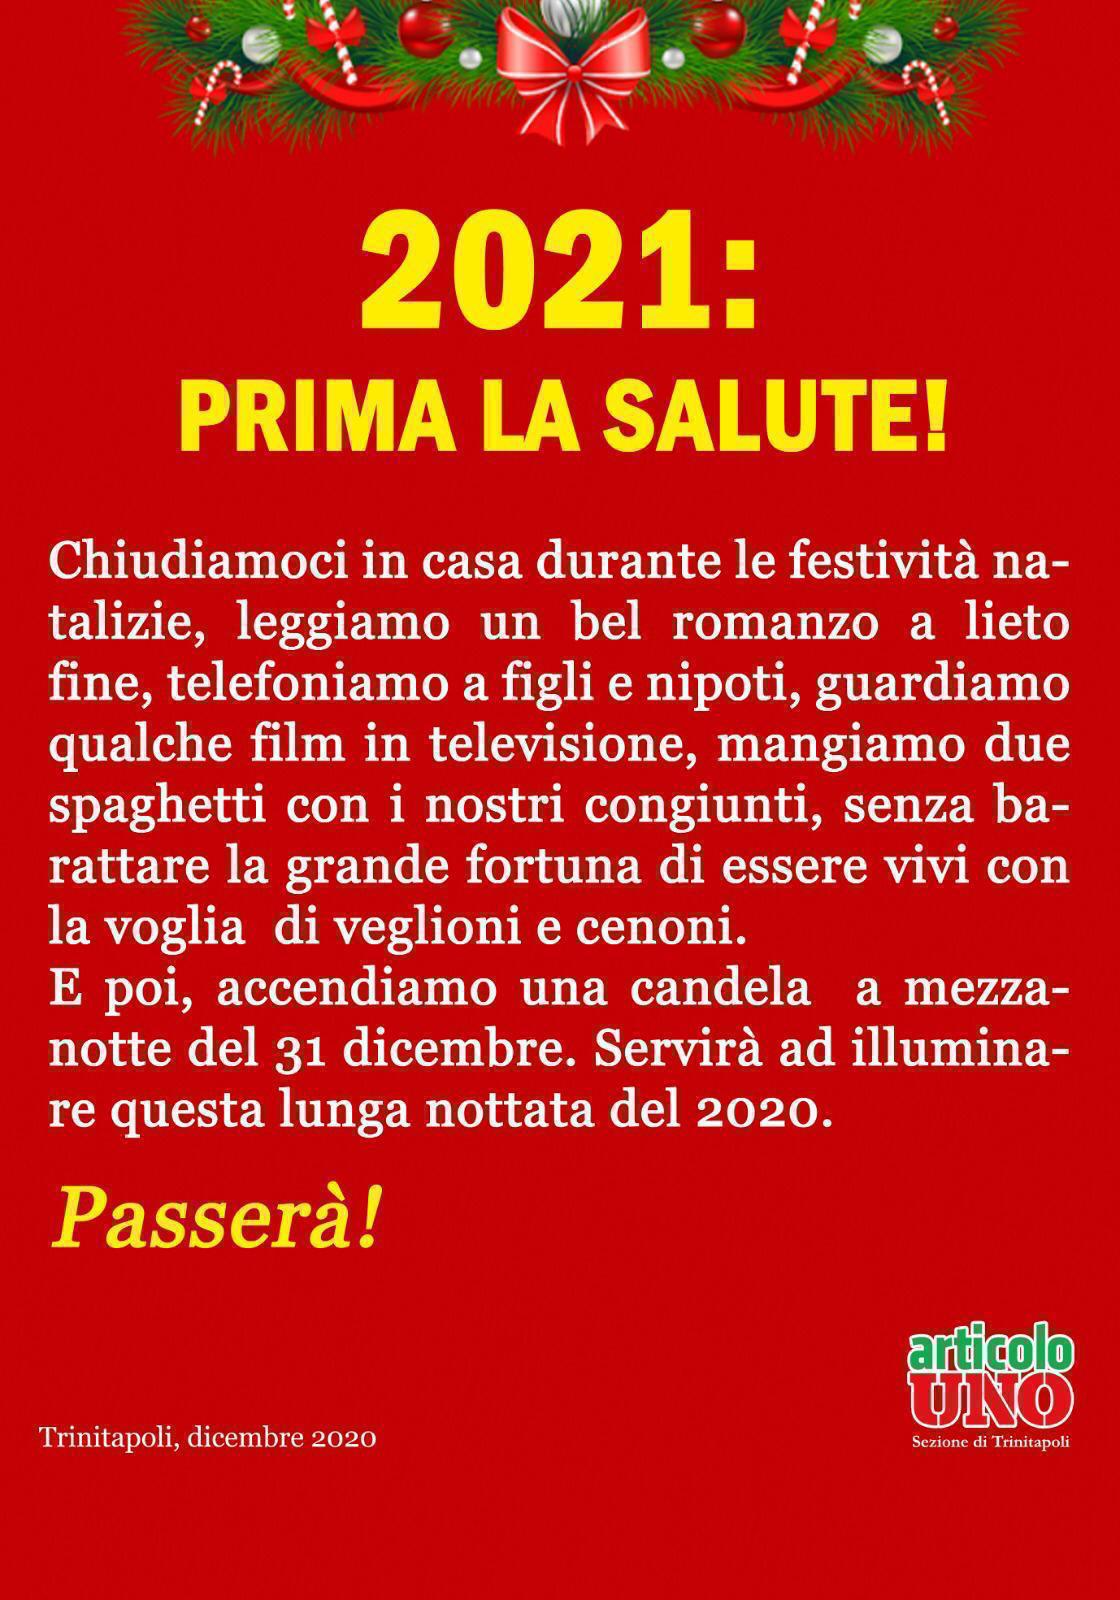 2021 Prima la salute! manifesto